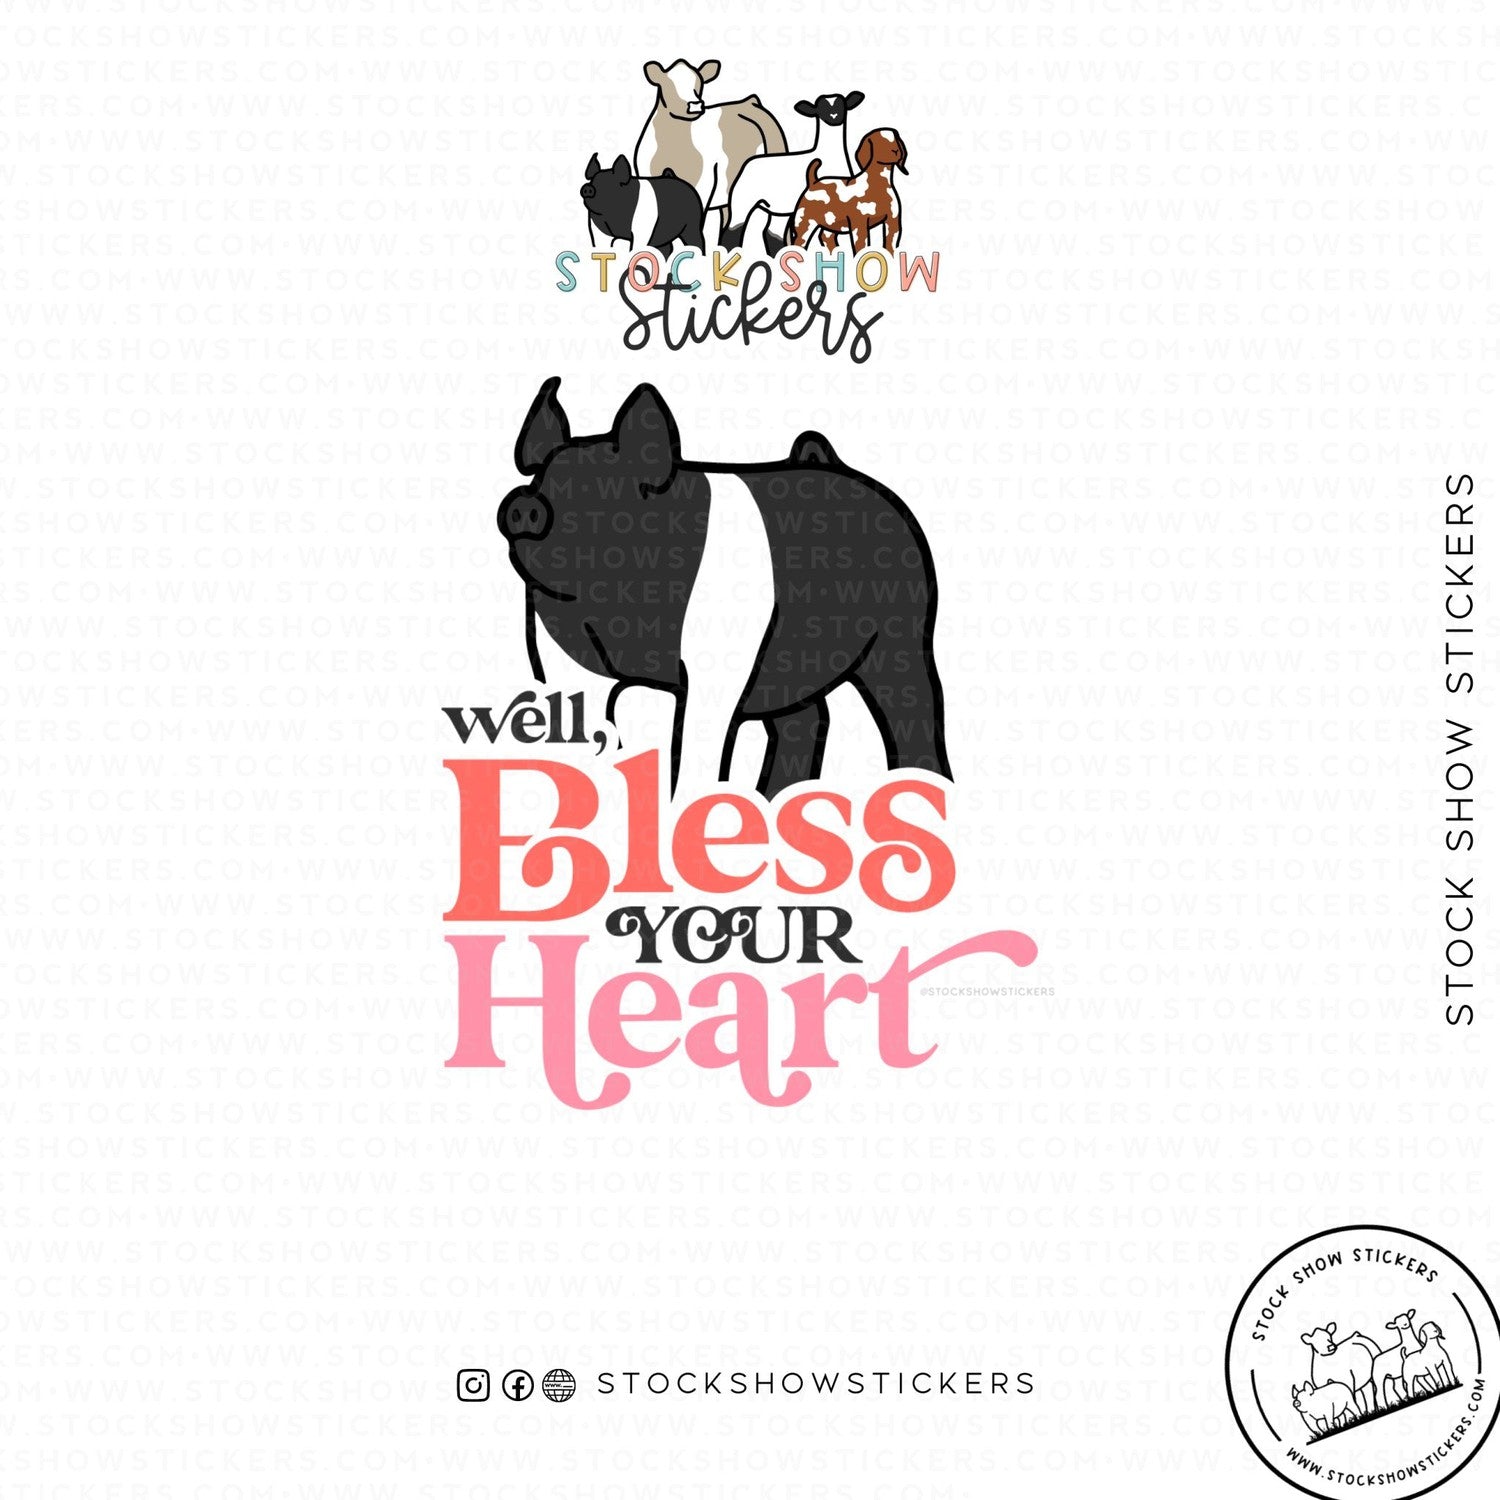 Custom Made Bless Your Heart Livestock Stickers Stock Show Livestock - Livestock &amp; Co. Boutique